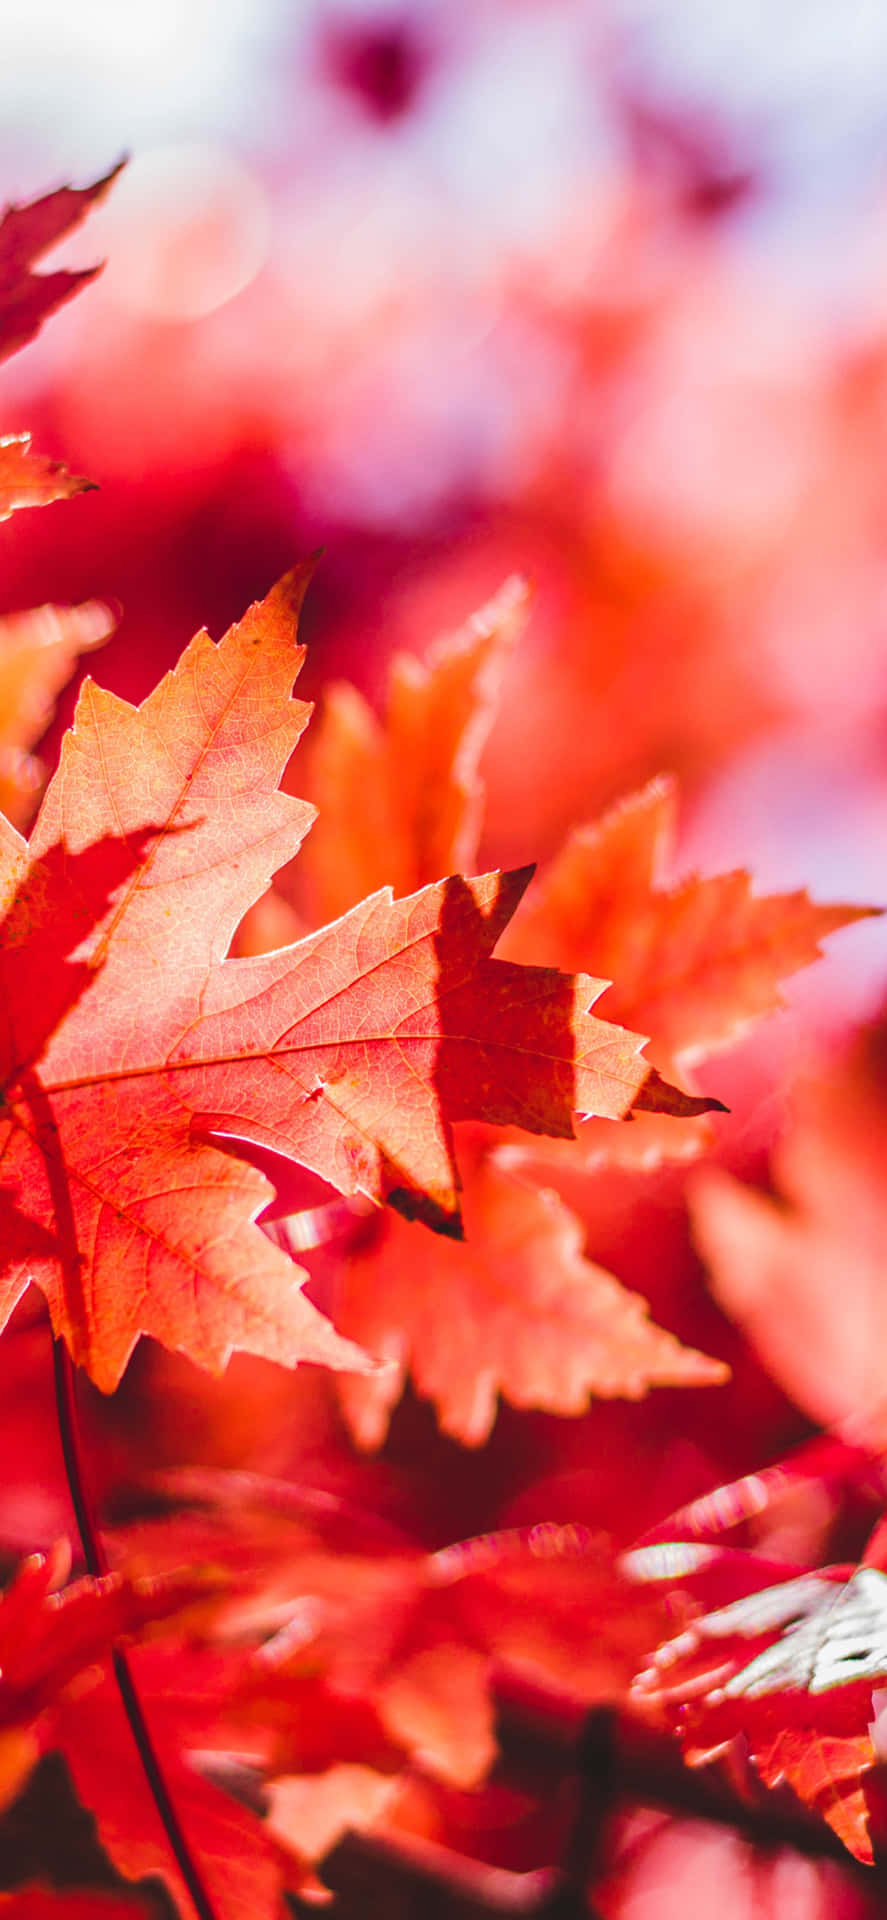 Catturala Bellezza Dell'autunno Con Questa Vibrante E Alla Moda Sfondo Delle Foglie D'autunno Per Iphone. Sfondo